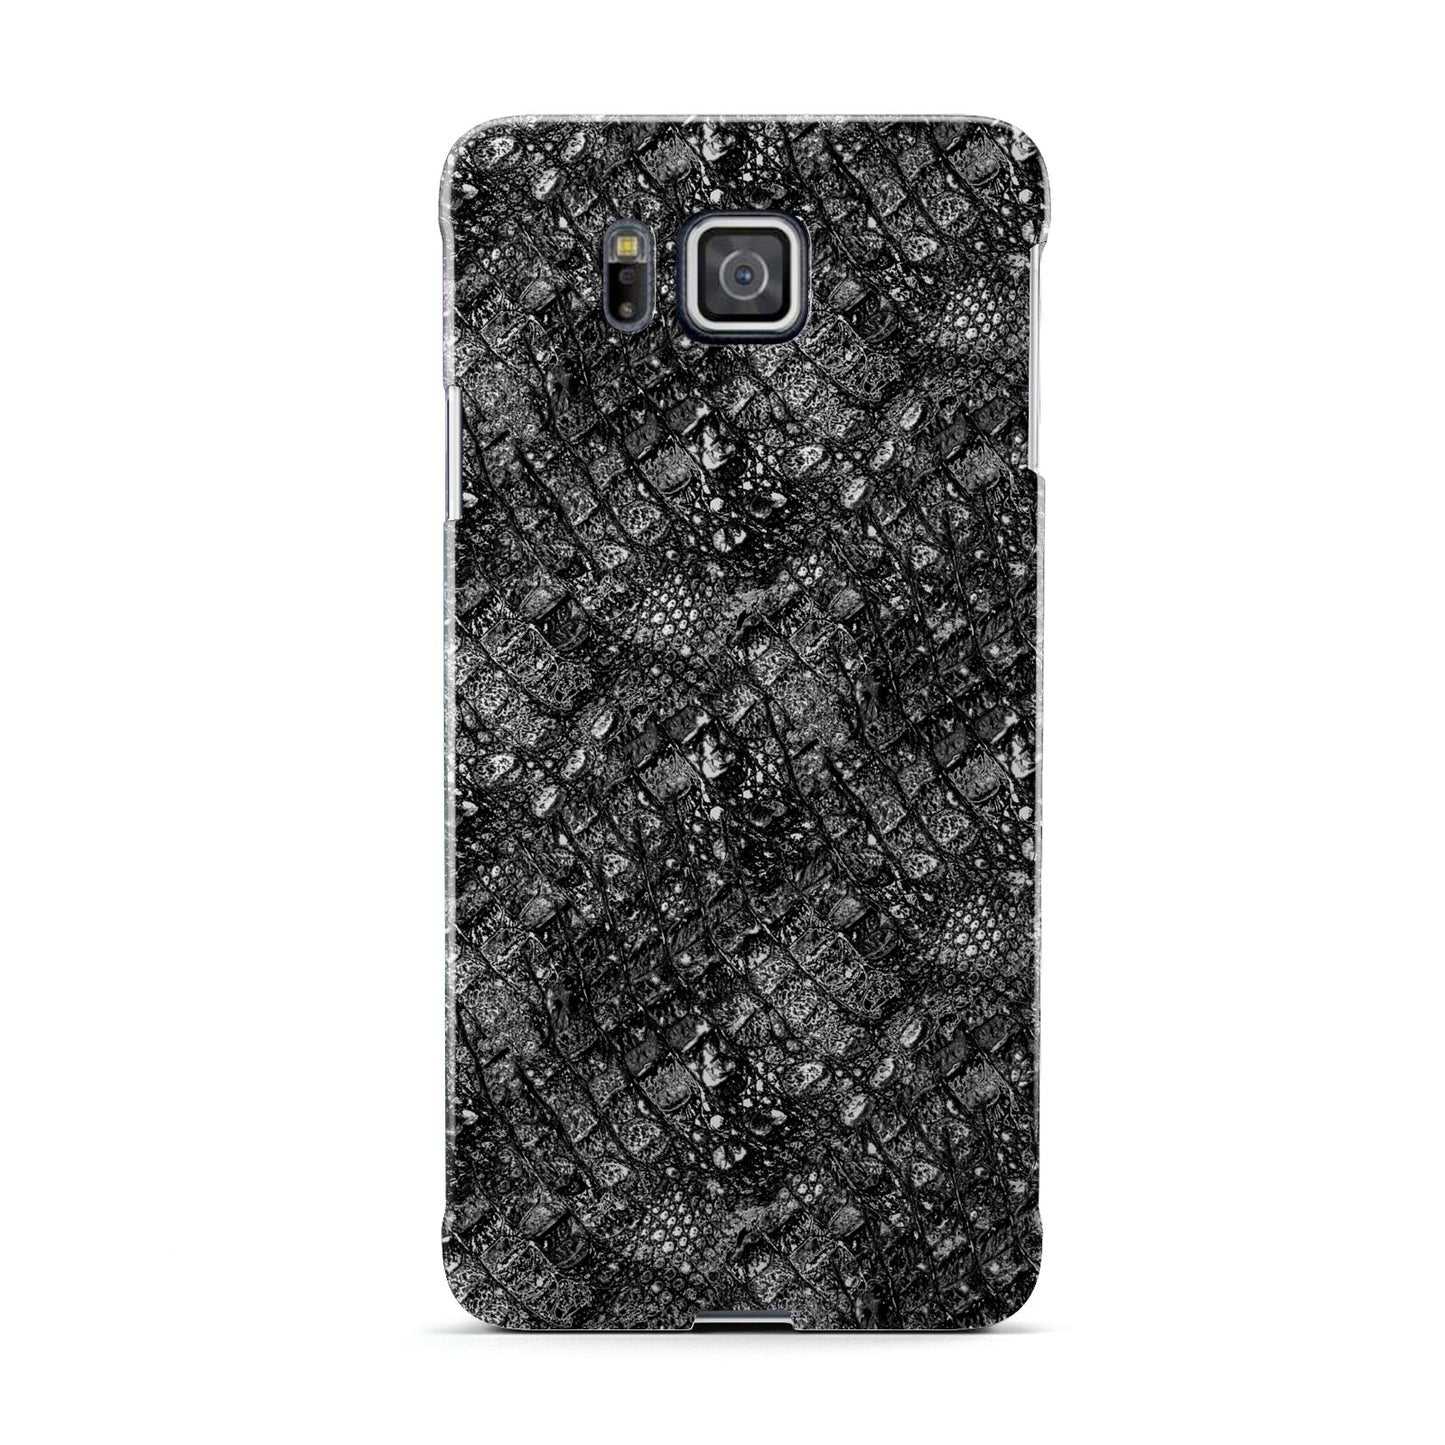 Snakeskin Design Samsung Galaxy Alpha Case